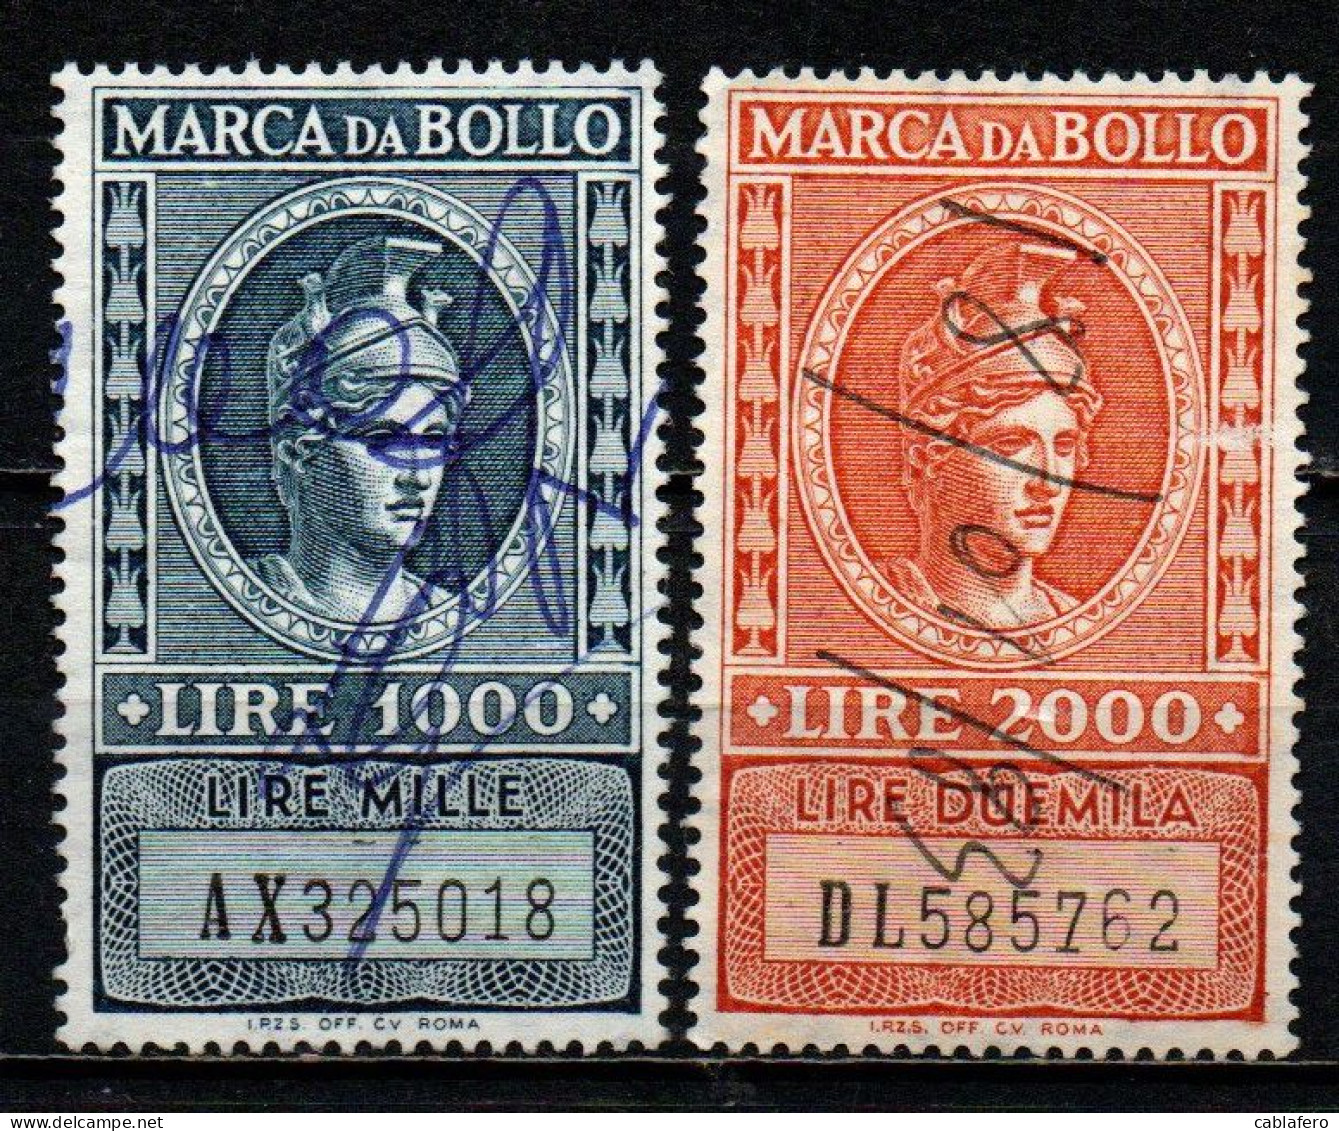 ITALIA REPUBBLICA - 1959 - MARCA DA BOLLO A TASSA FISSA - FILIGRANA STELLA - NUOVO FORMATO - USATI - Steuermarken